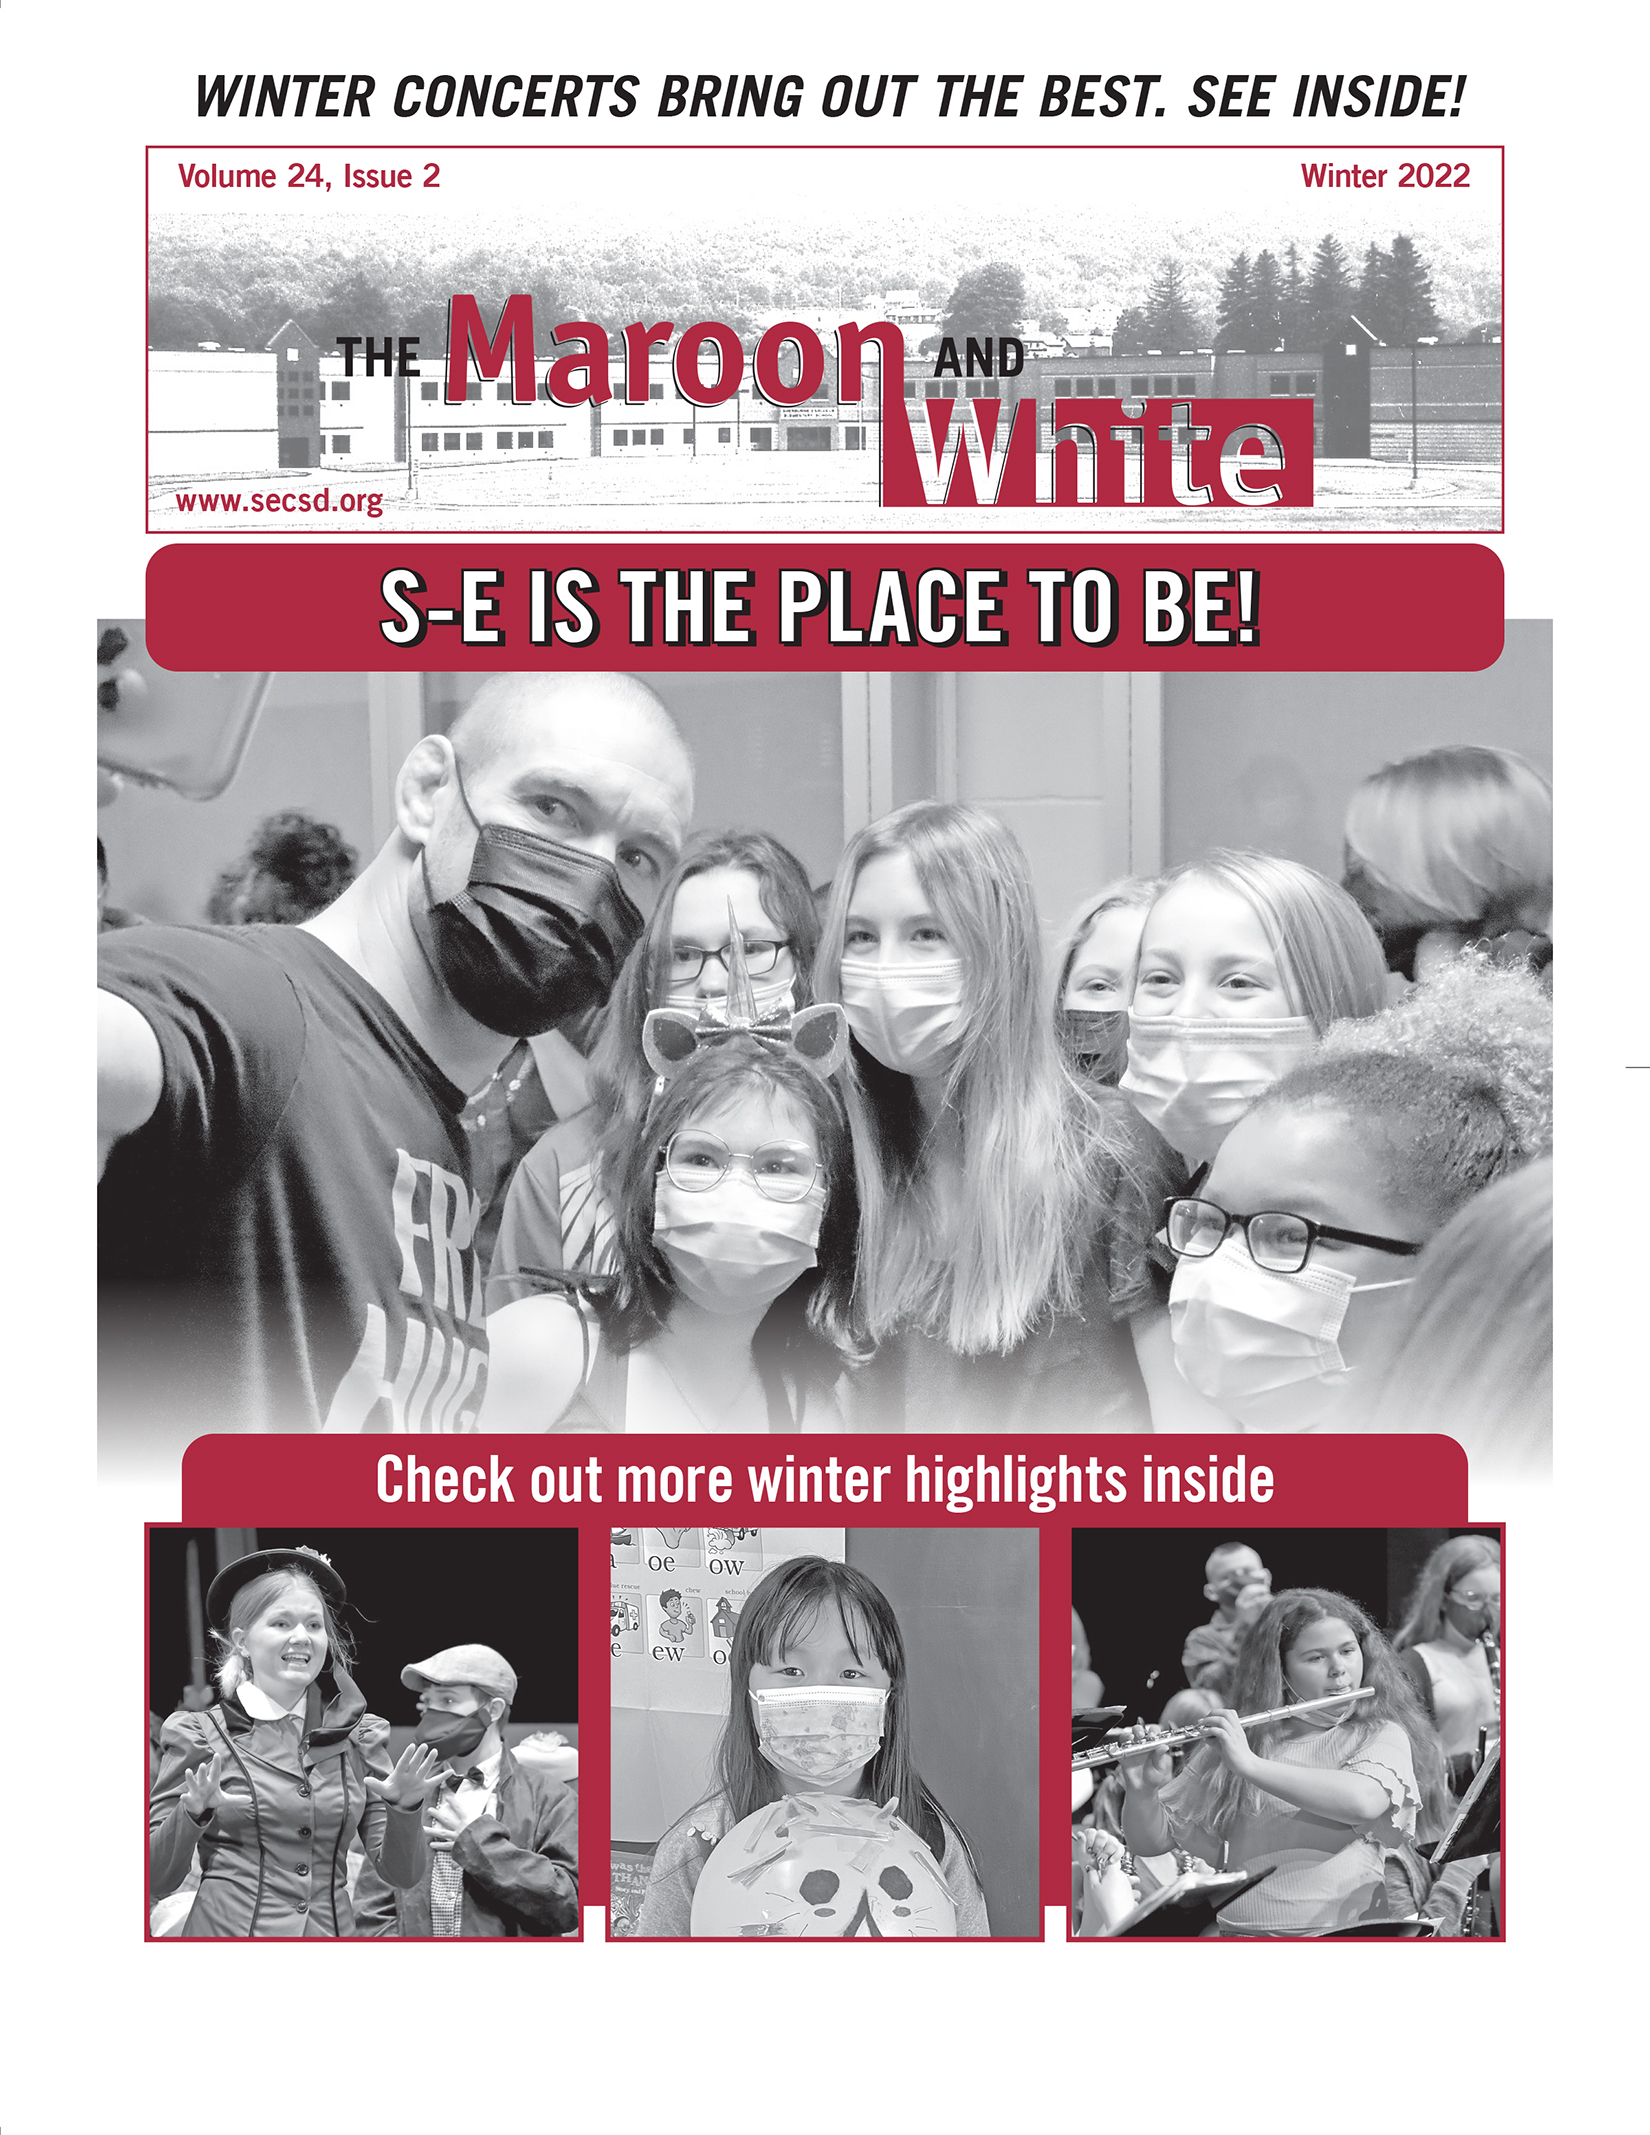 S-E Winter 2022 Newsletter Cover